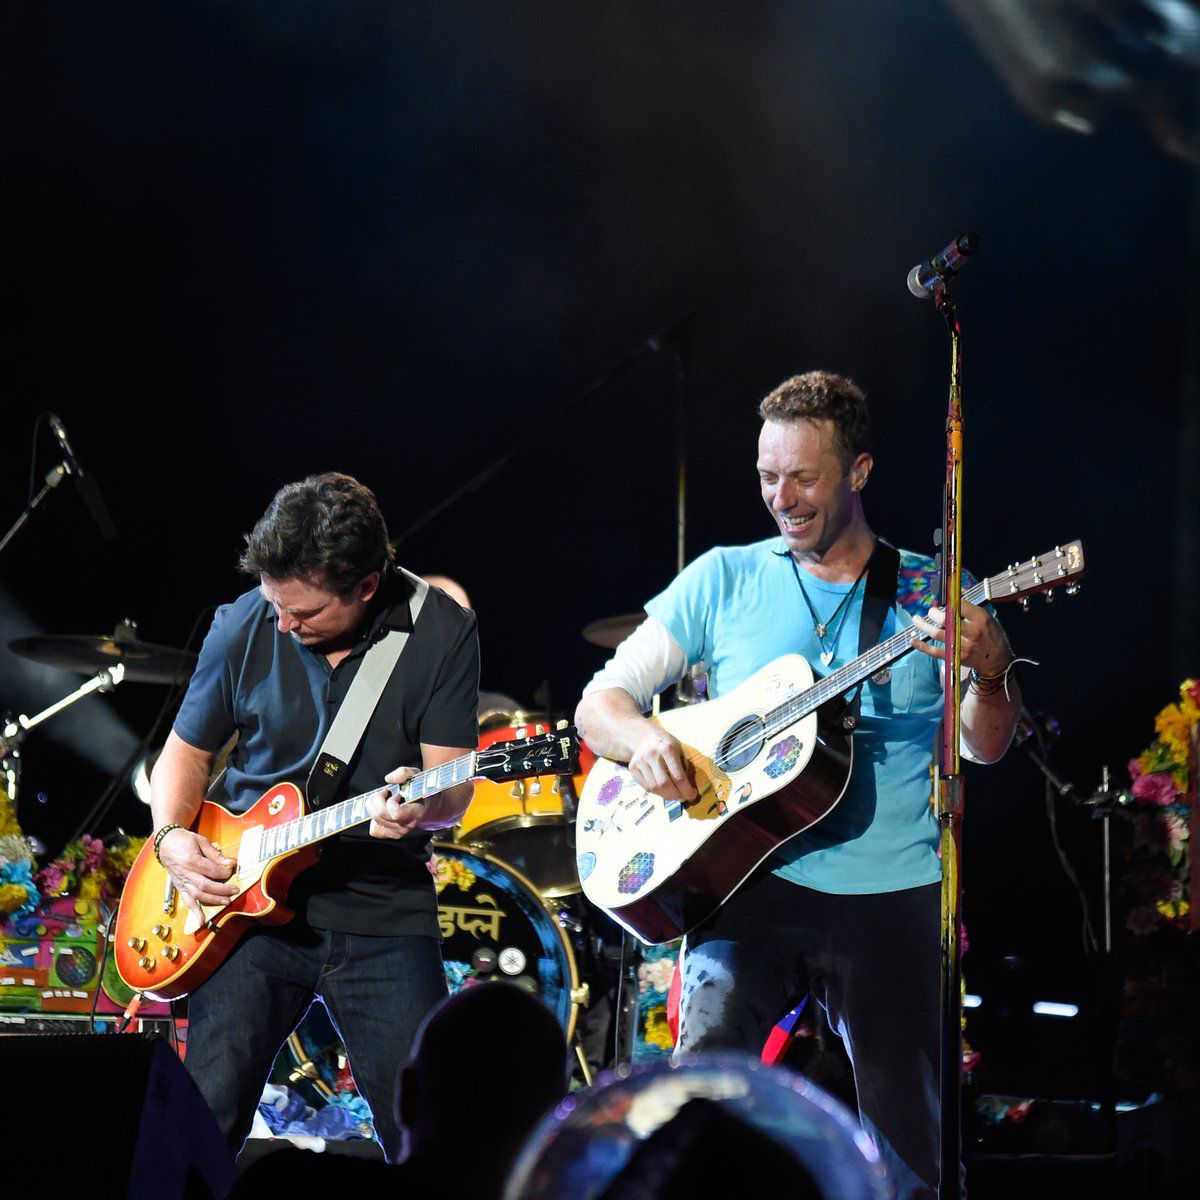 Michael J. Fox sube al escenario de Coldplay